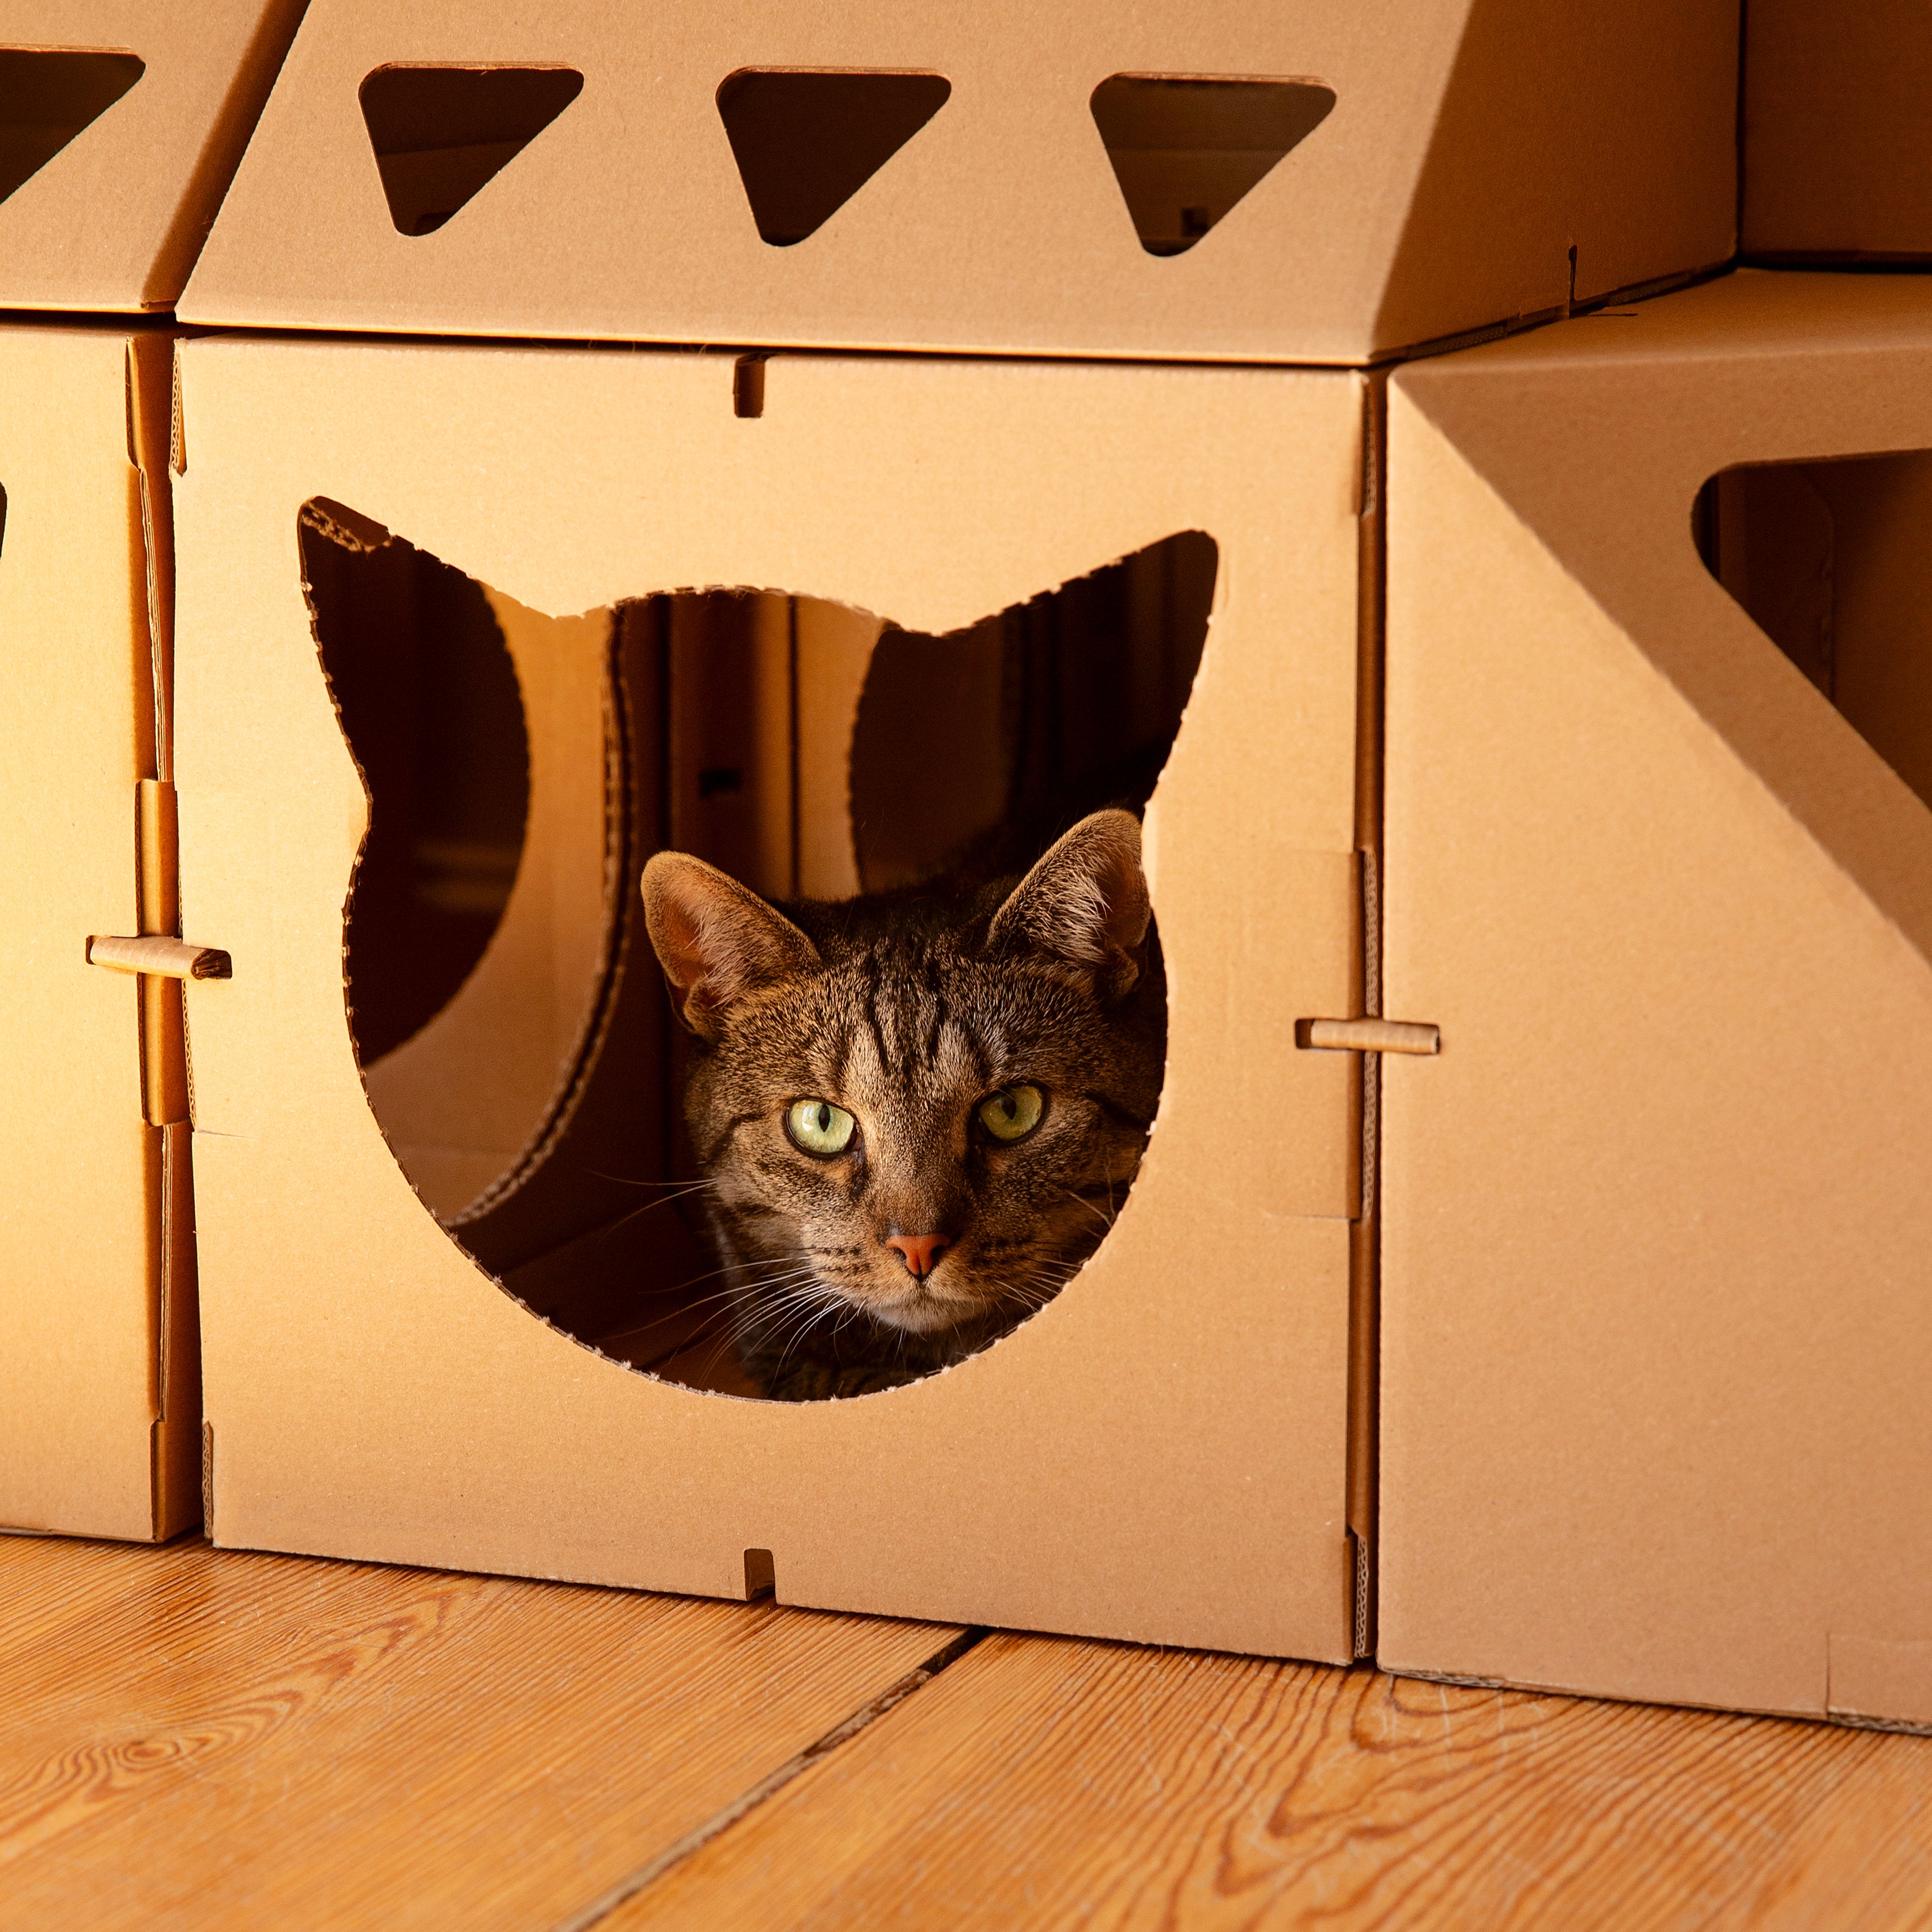 Katze sitzt in einer Kartonschachtel eines Katzenhauses aus Karton